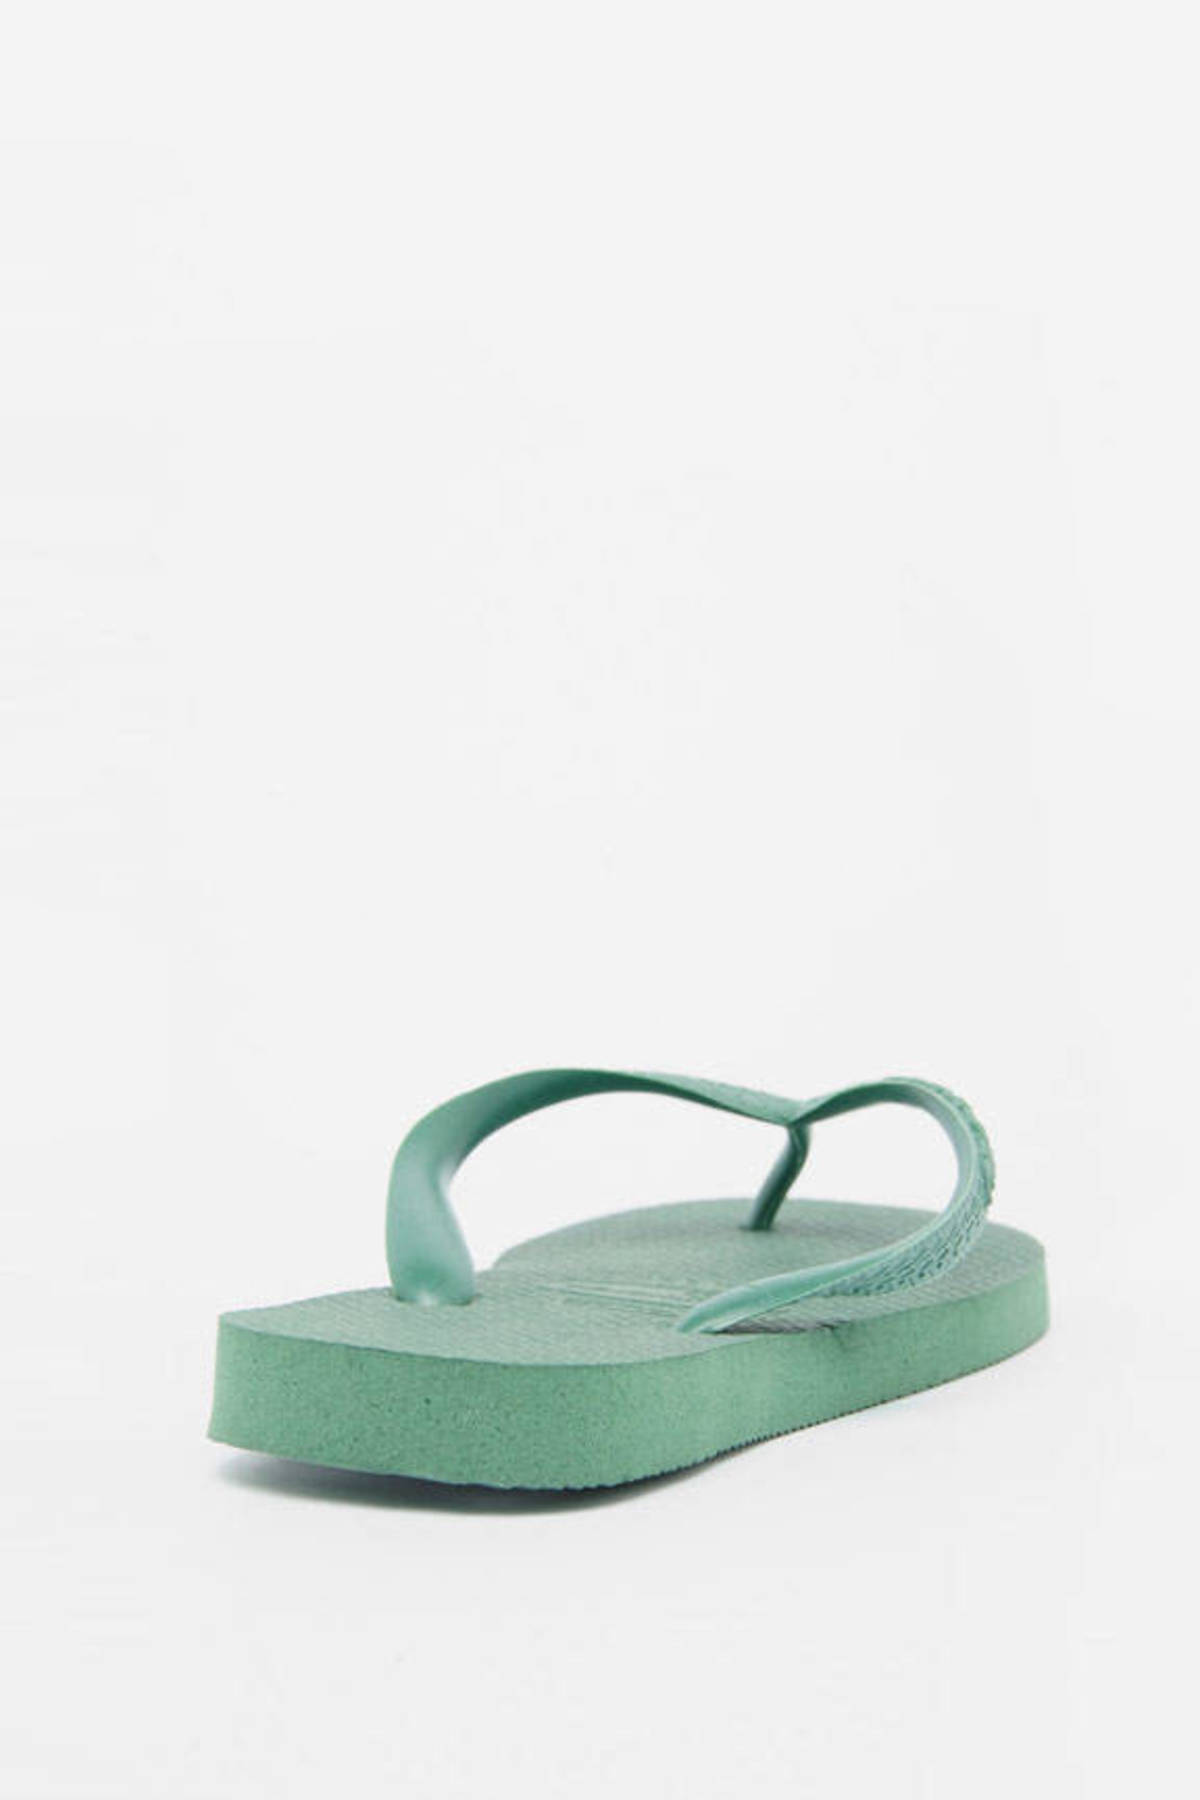 Top 8 Sandals in Moss Green - $10 | Tobi US